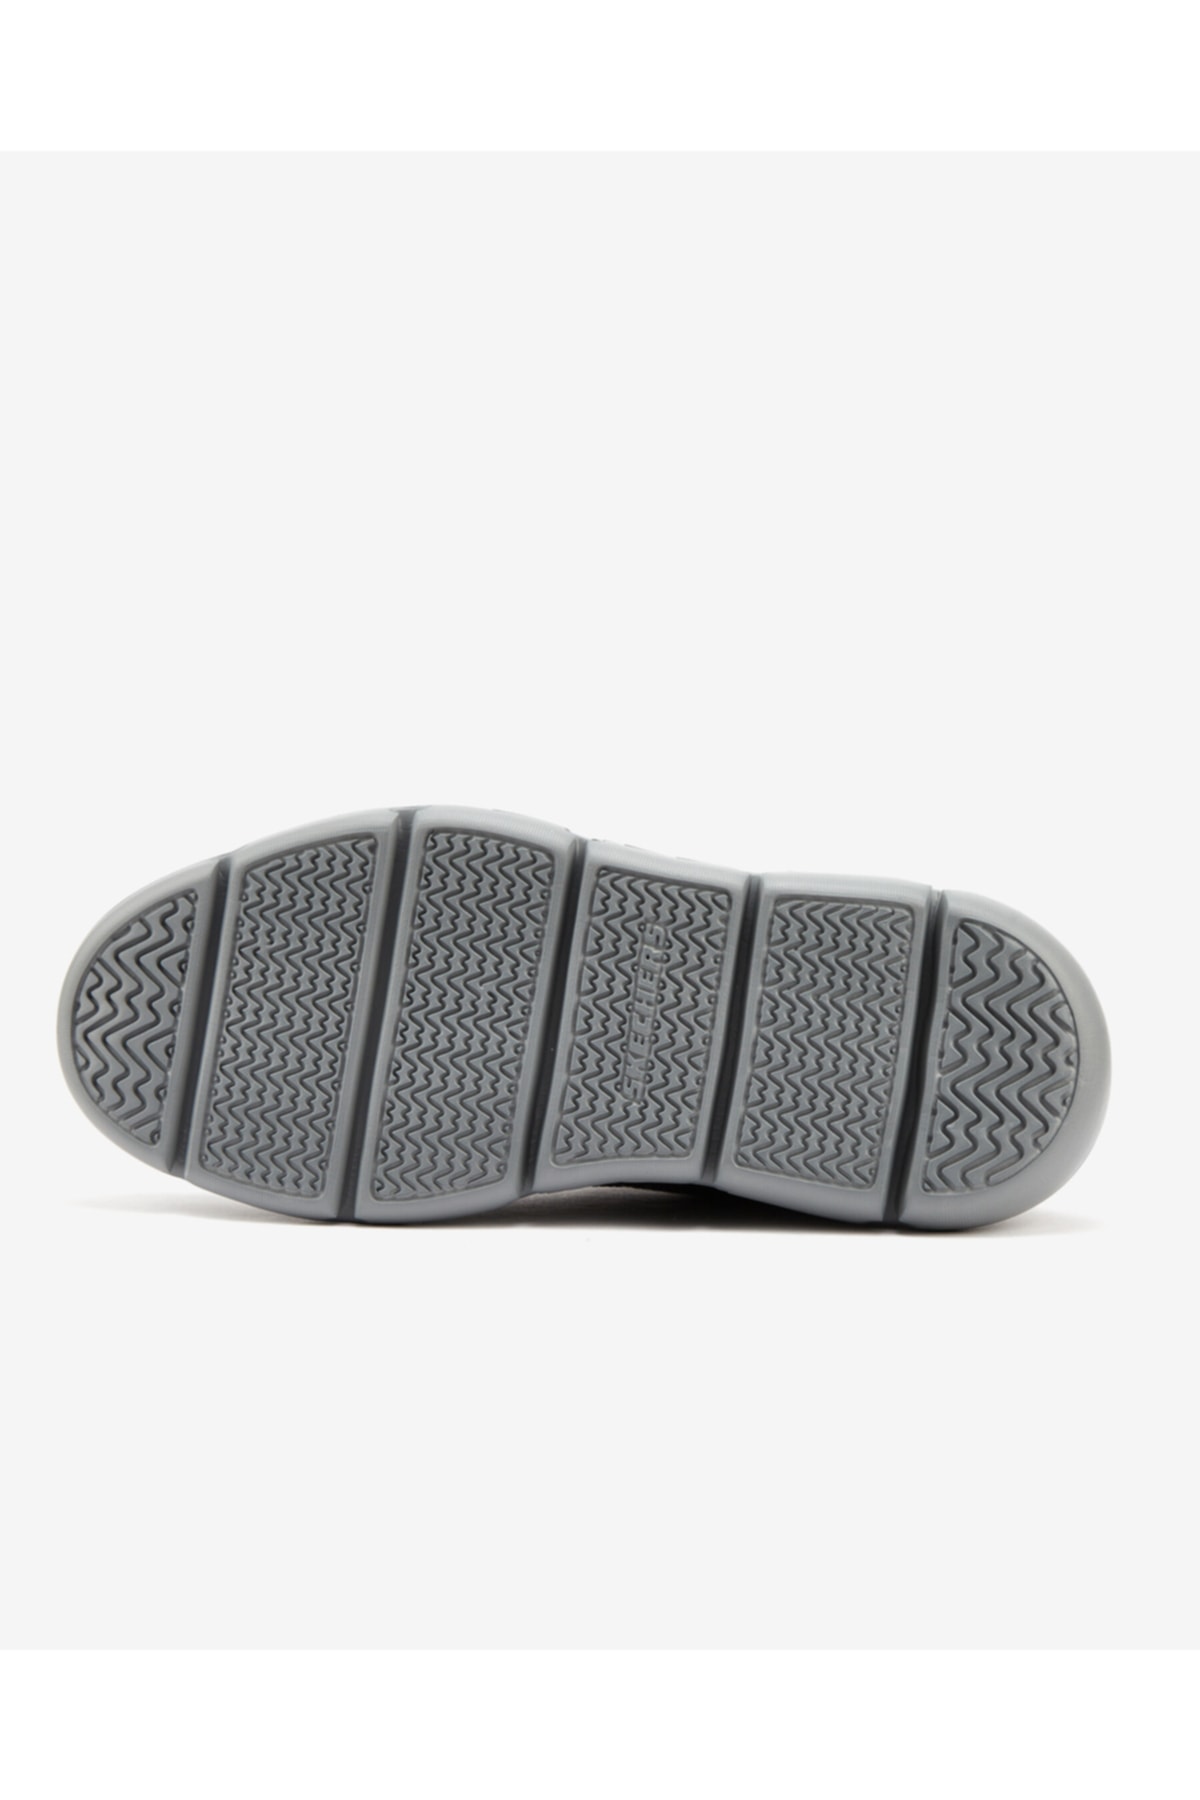 کفش راحتی مردانه مشکی رومانو Garza Romano اسکچرز Skechers (برند آمریکا)